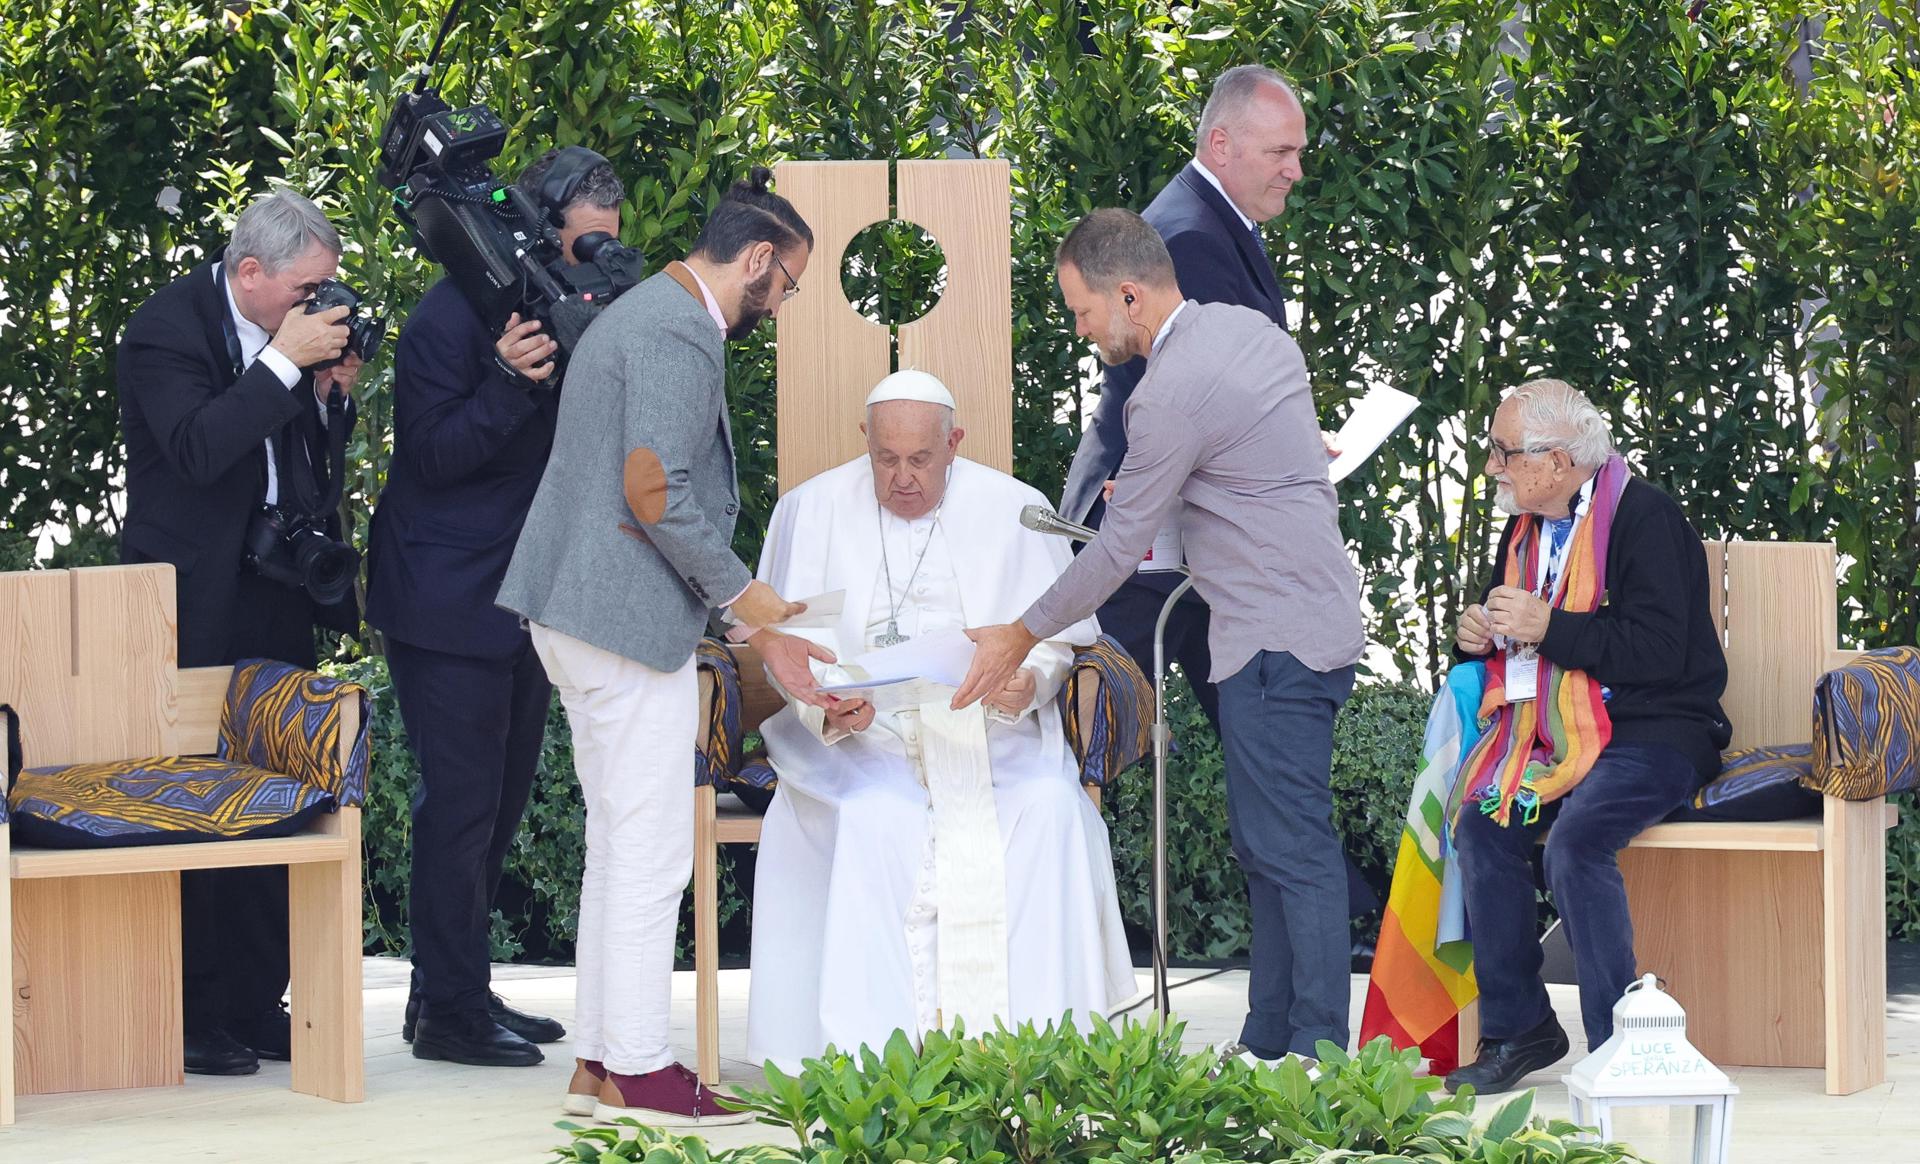 El Papa con un israelí y a un palestino en una ceremonia religiosa